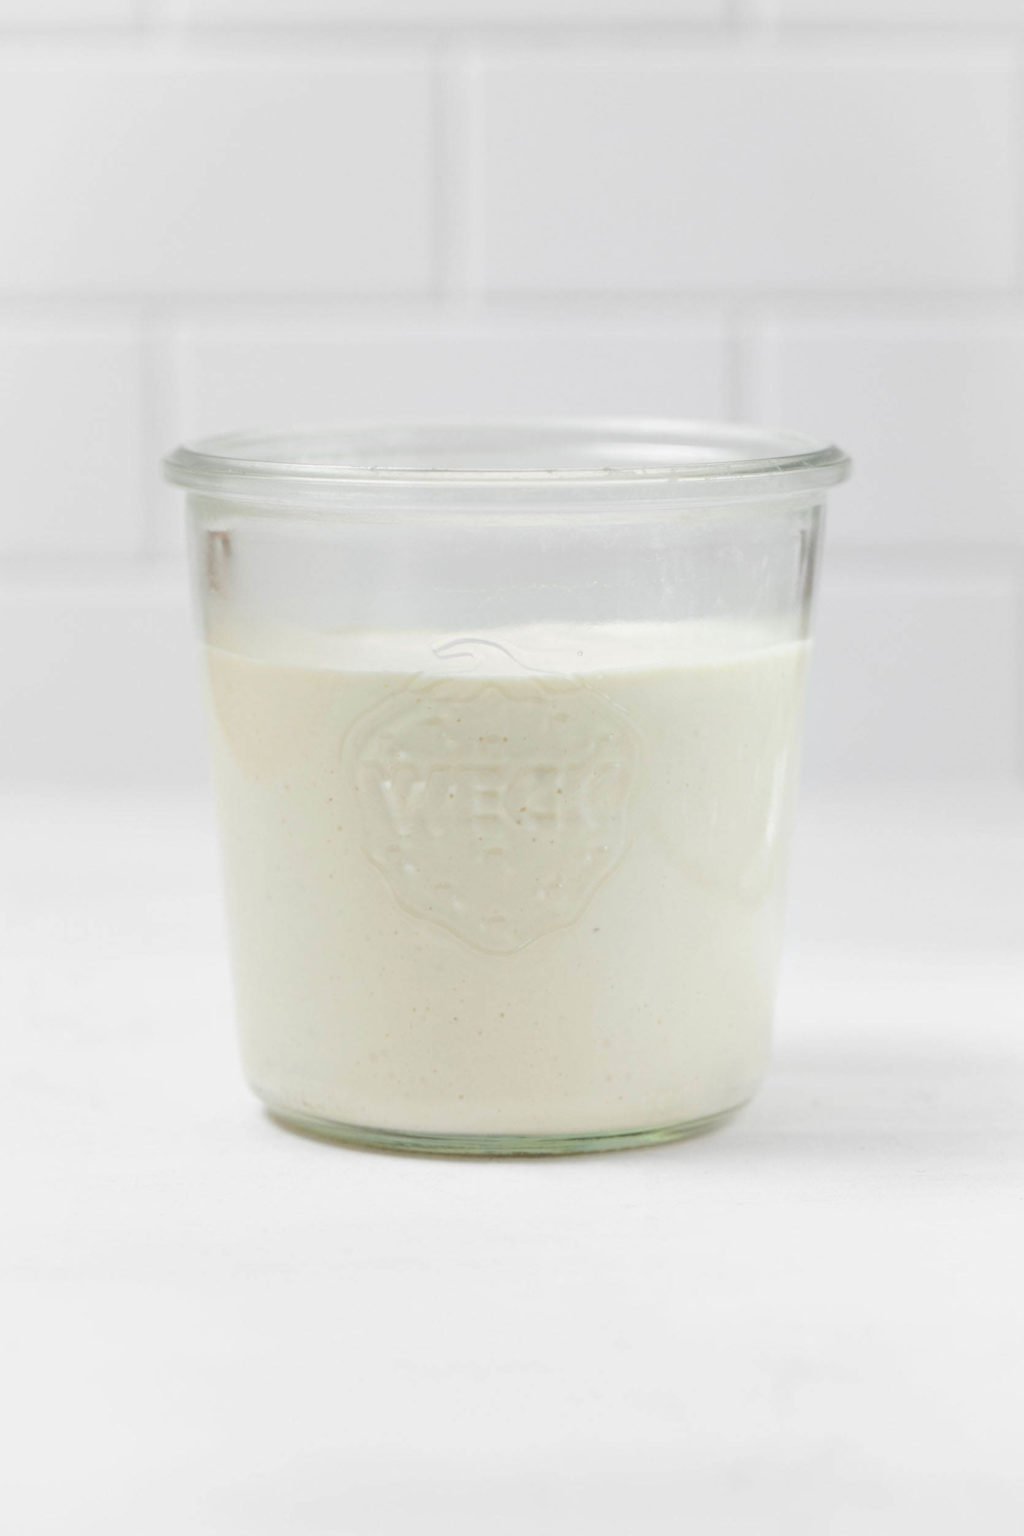 Una paleta de vidrio blanco sostiene una botella de crema agria vegana cremosa.  Se apoya sobre una superficie blanca.